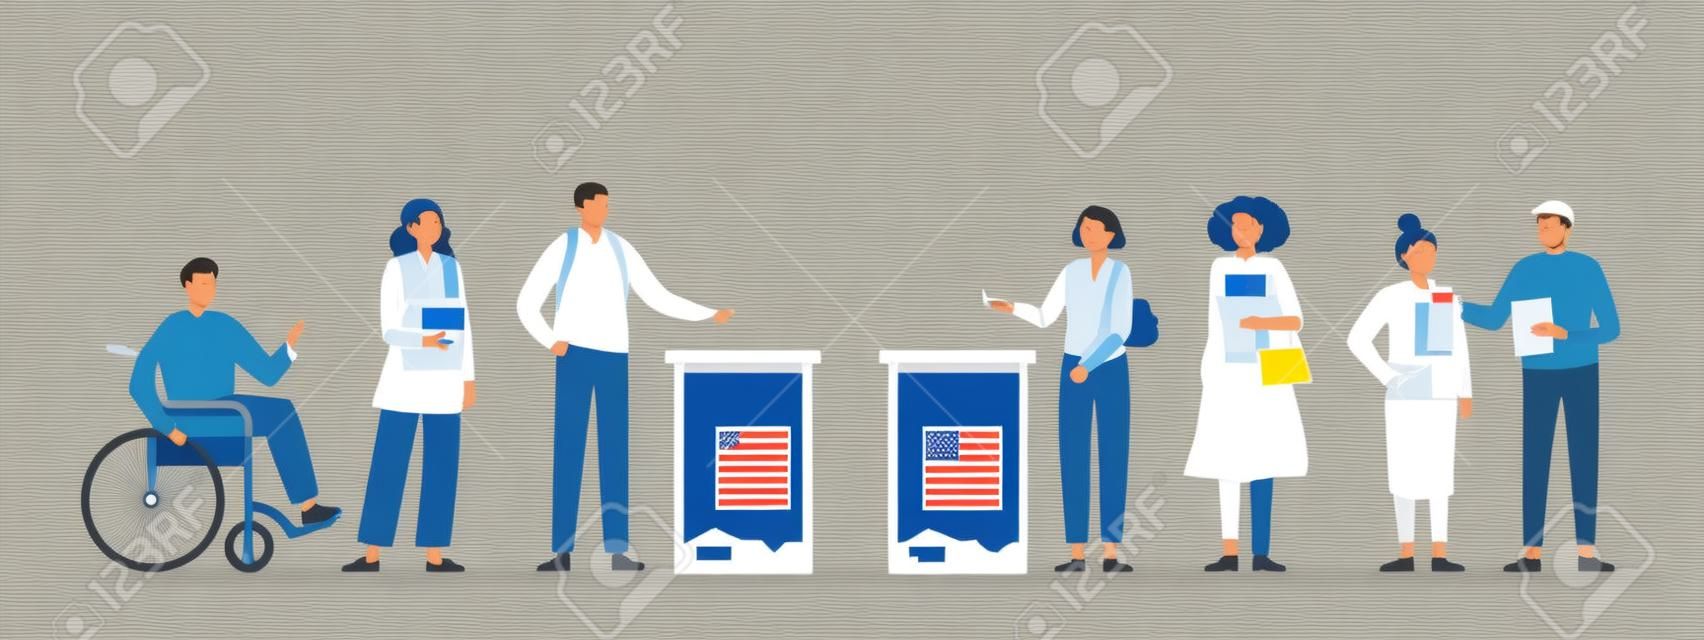 Notion de jour d'élection. Différents électeurs votant au bureau de vote. Des hommes et des femmes déposent des bulletins de vote dans l'urne électorale. Élection démocratique. Illustration vectorielle plate.